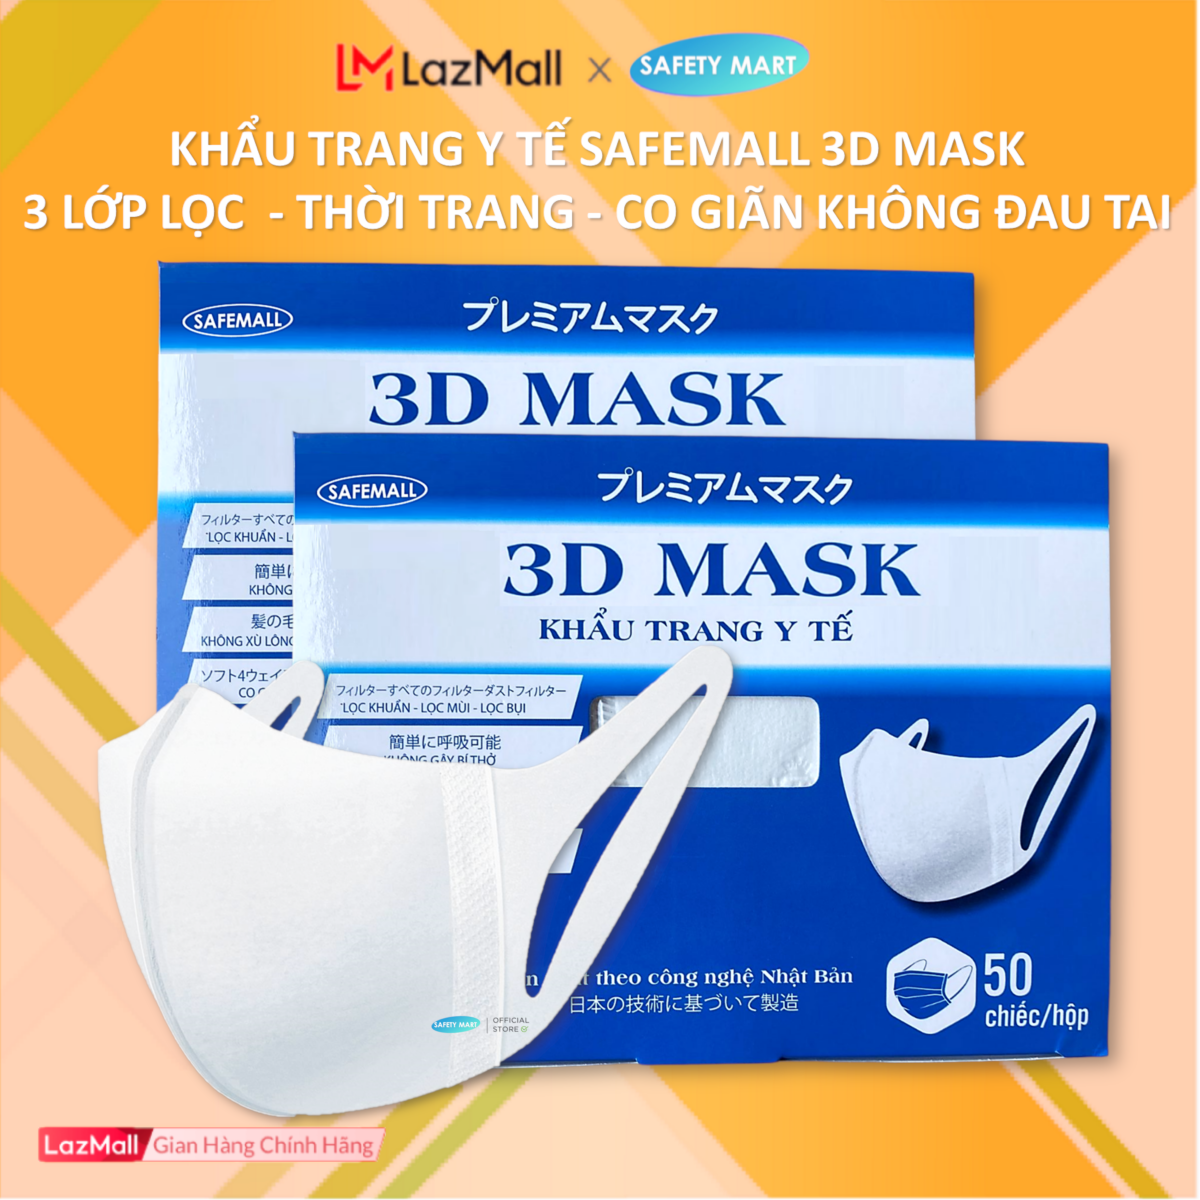 Hộp 50 chiếc Khẩu trang y tế 3D Mask thời trang SafeMall màu trắng, Khẩu trang 3 lớp kháng khuẩn công nghệ nhật Bản Japan Technology, ngăn ngừa bụi mịn, vi khuẩn, ô nhiễm...- Hàng Chính Hãng Safety Mart Official